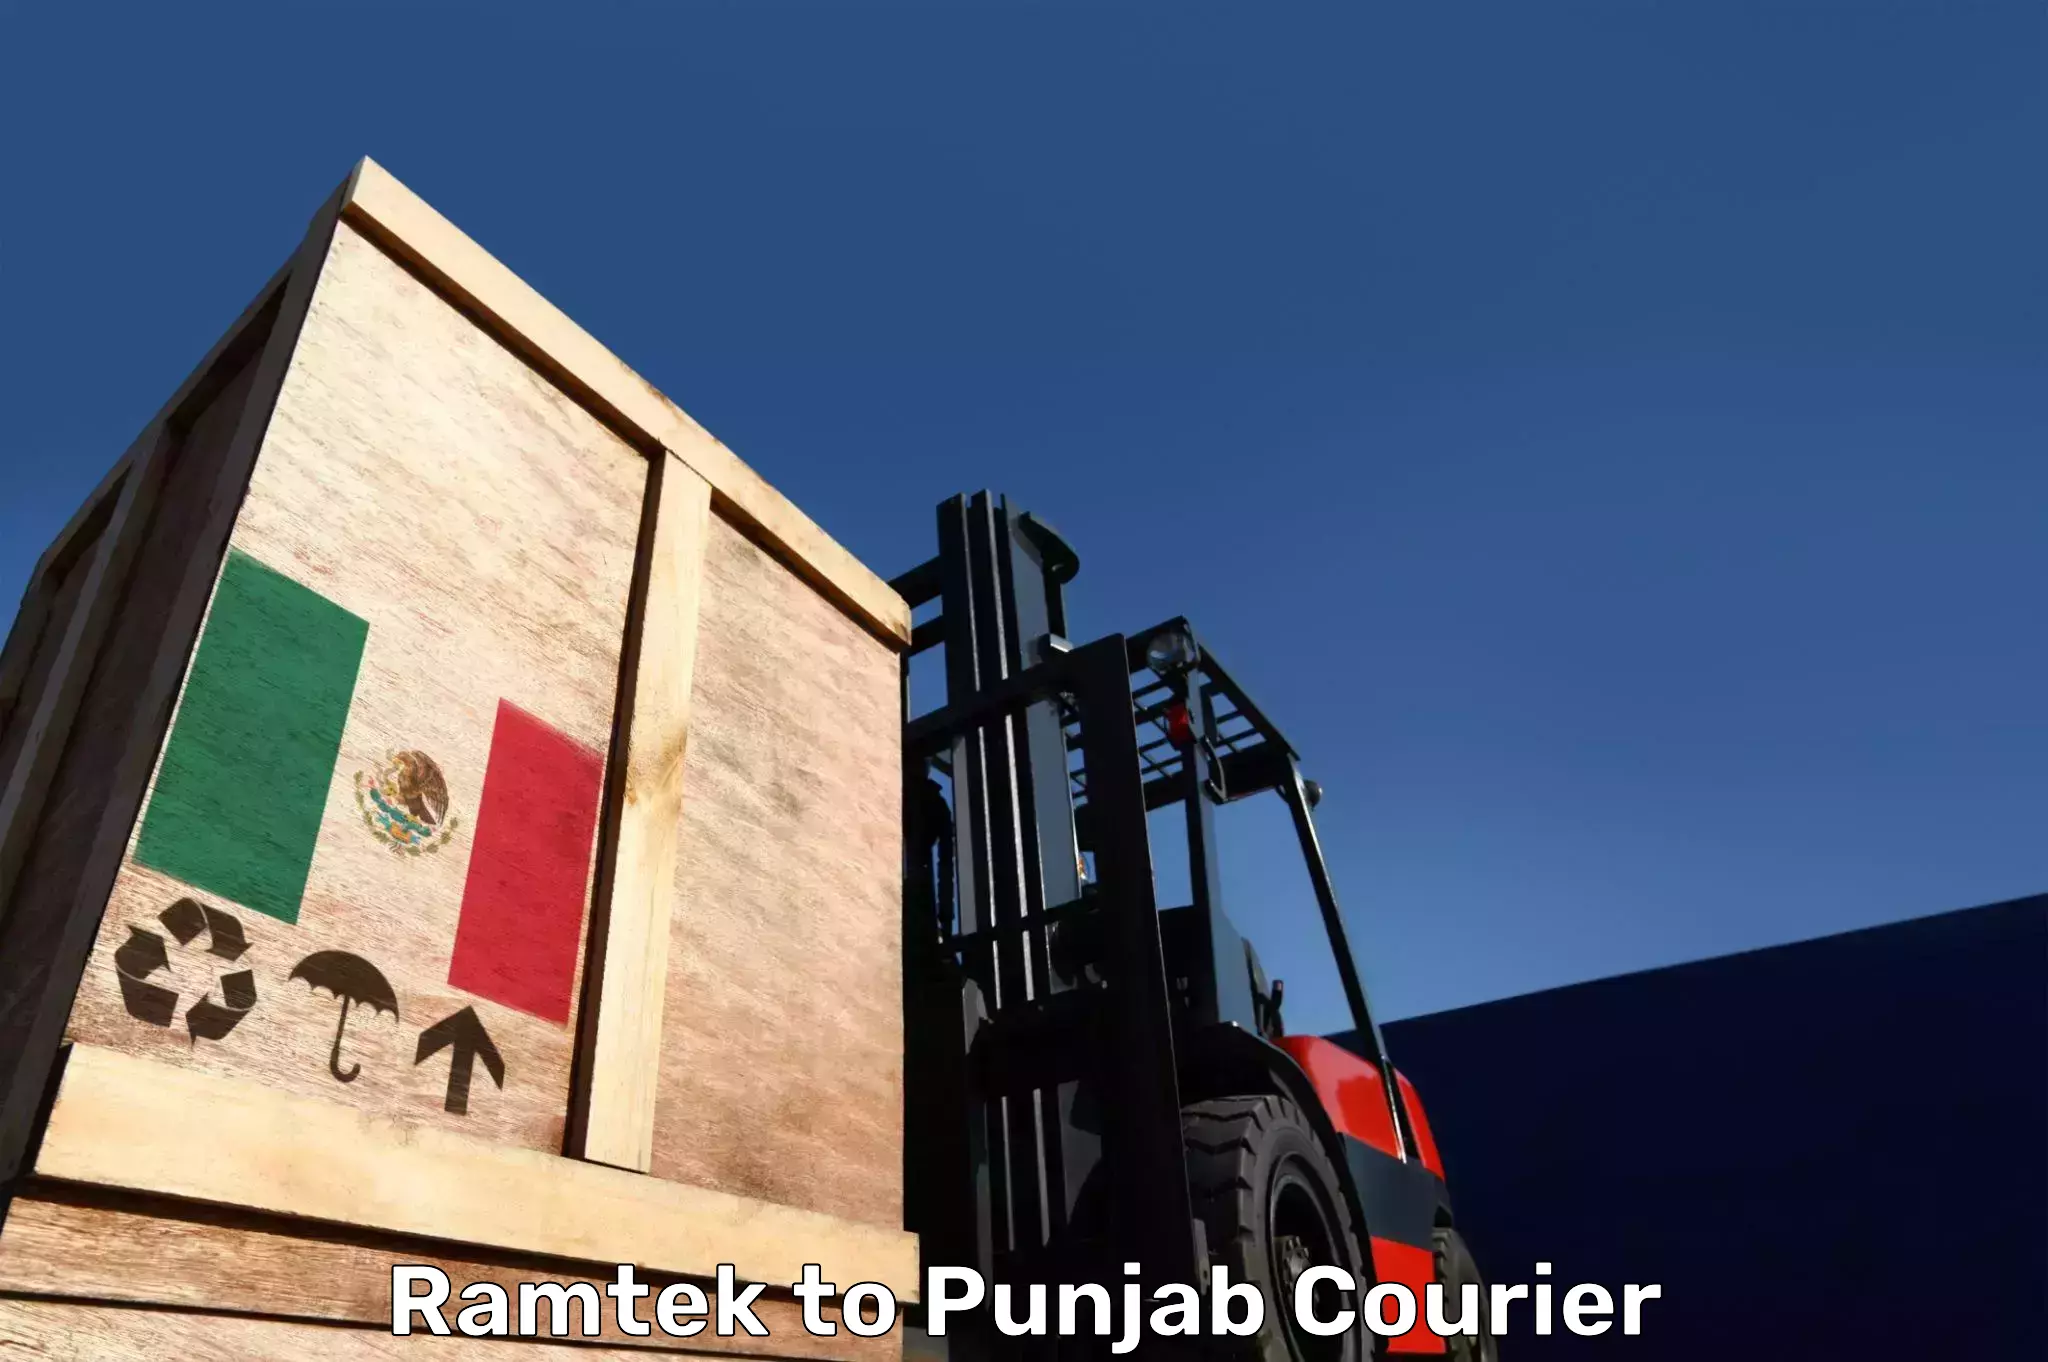 Luggage transport service Ramtek to Punjab